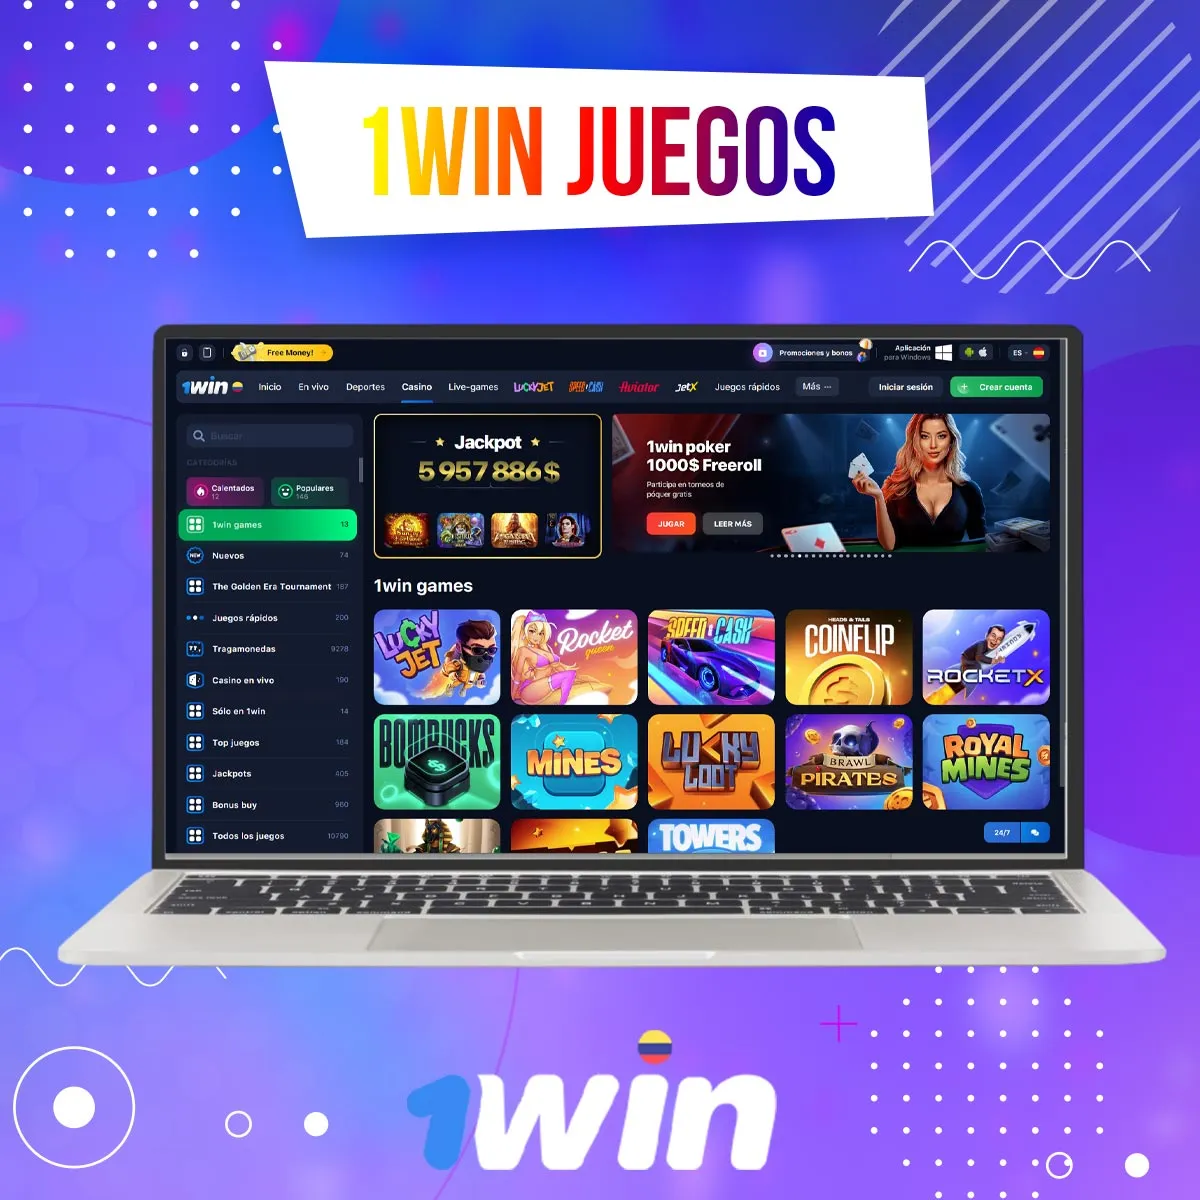 Juegos de casino exclusivos de 1win en Colombia